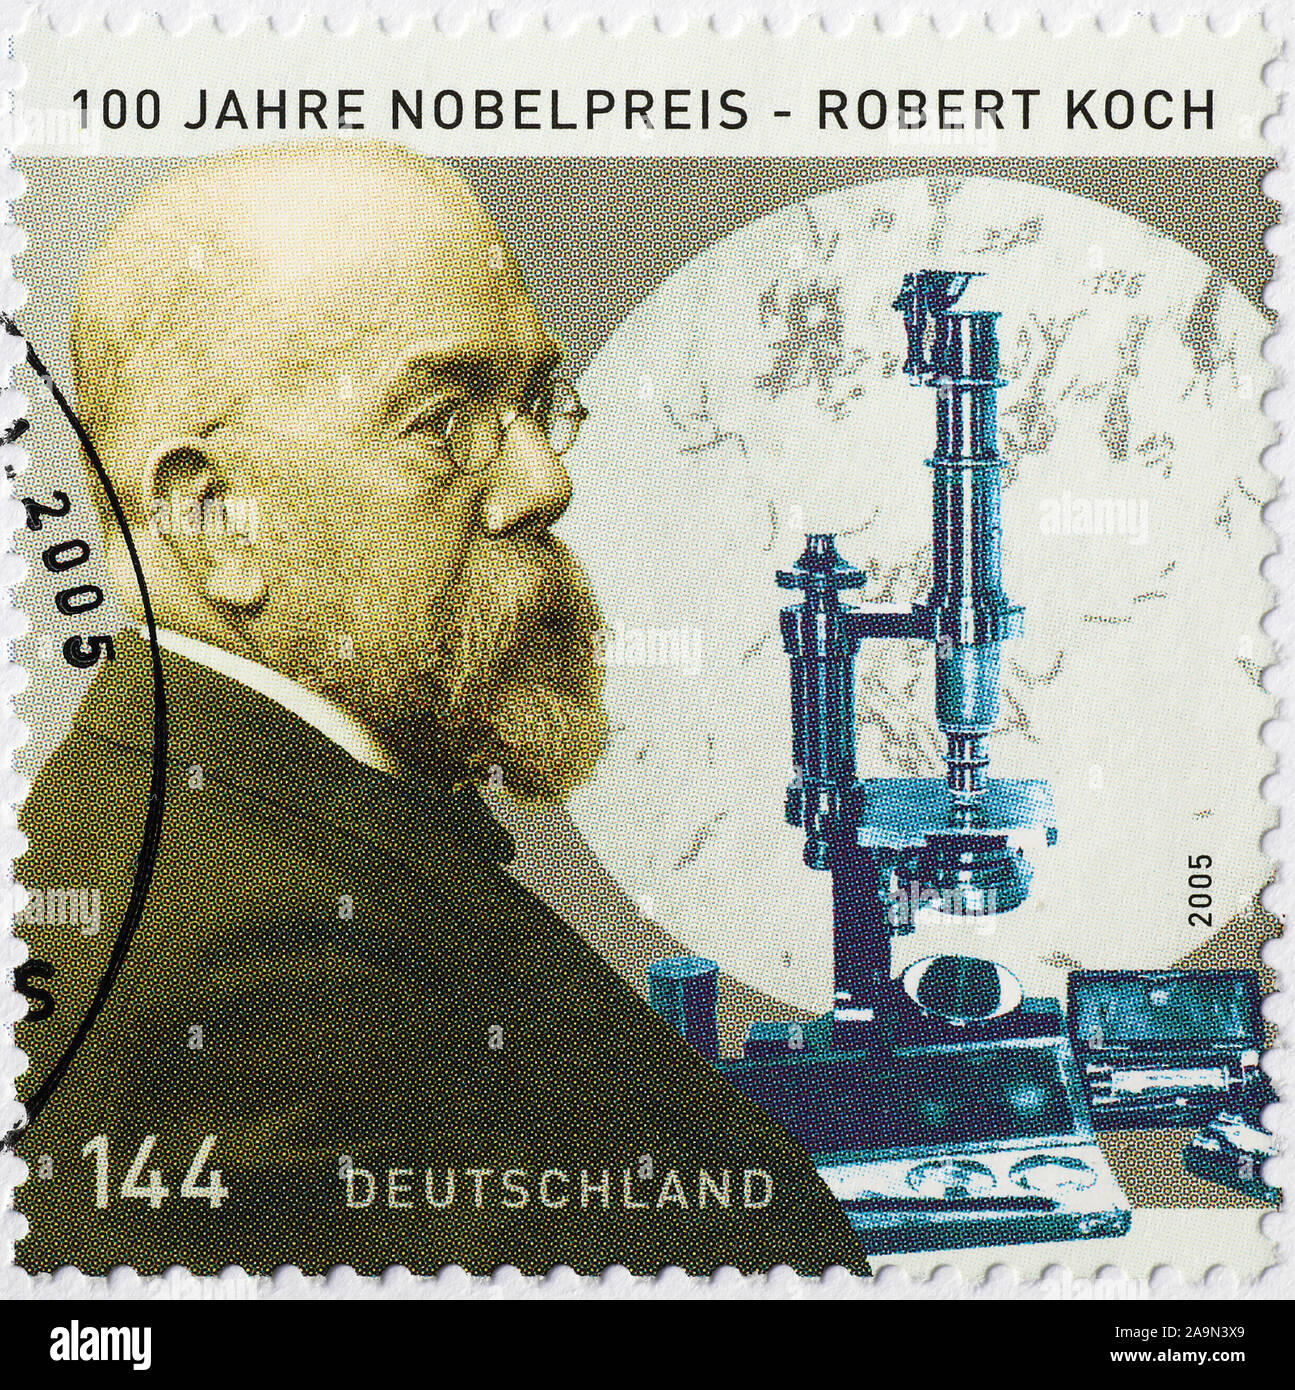 Nobelpreisträger Robert Koch auf deutschen Briefmarke taxierten Stockfoto